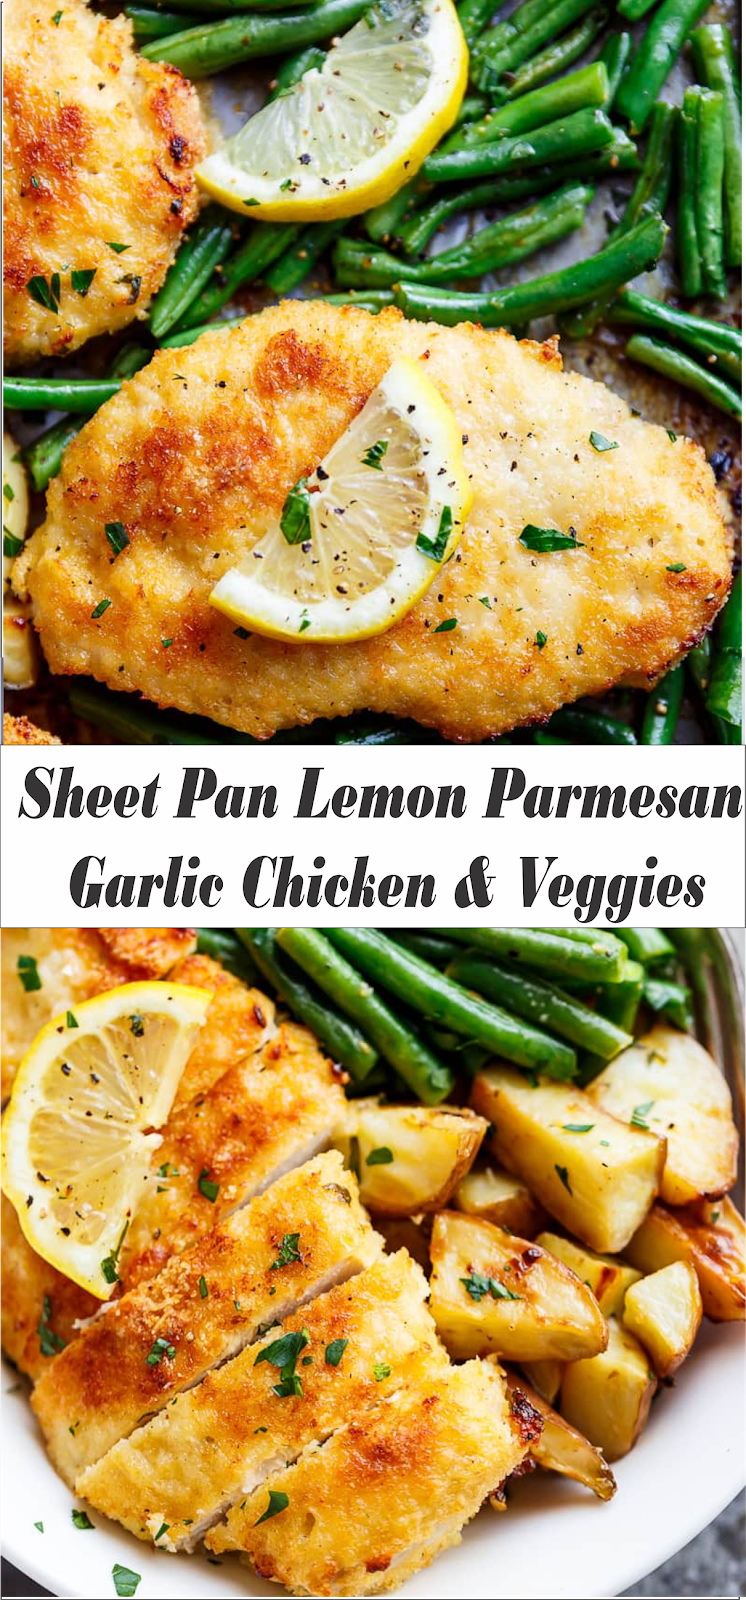 Easy Recipe: Tasty Sheet Pan Lemon Parmesan Garlic Chicken Veggies ...